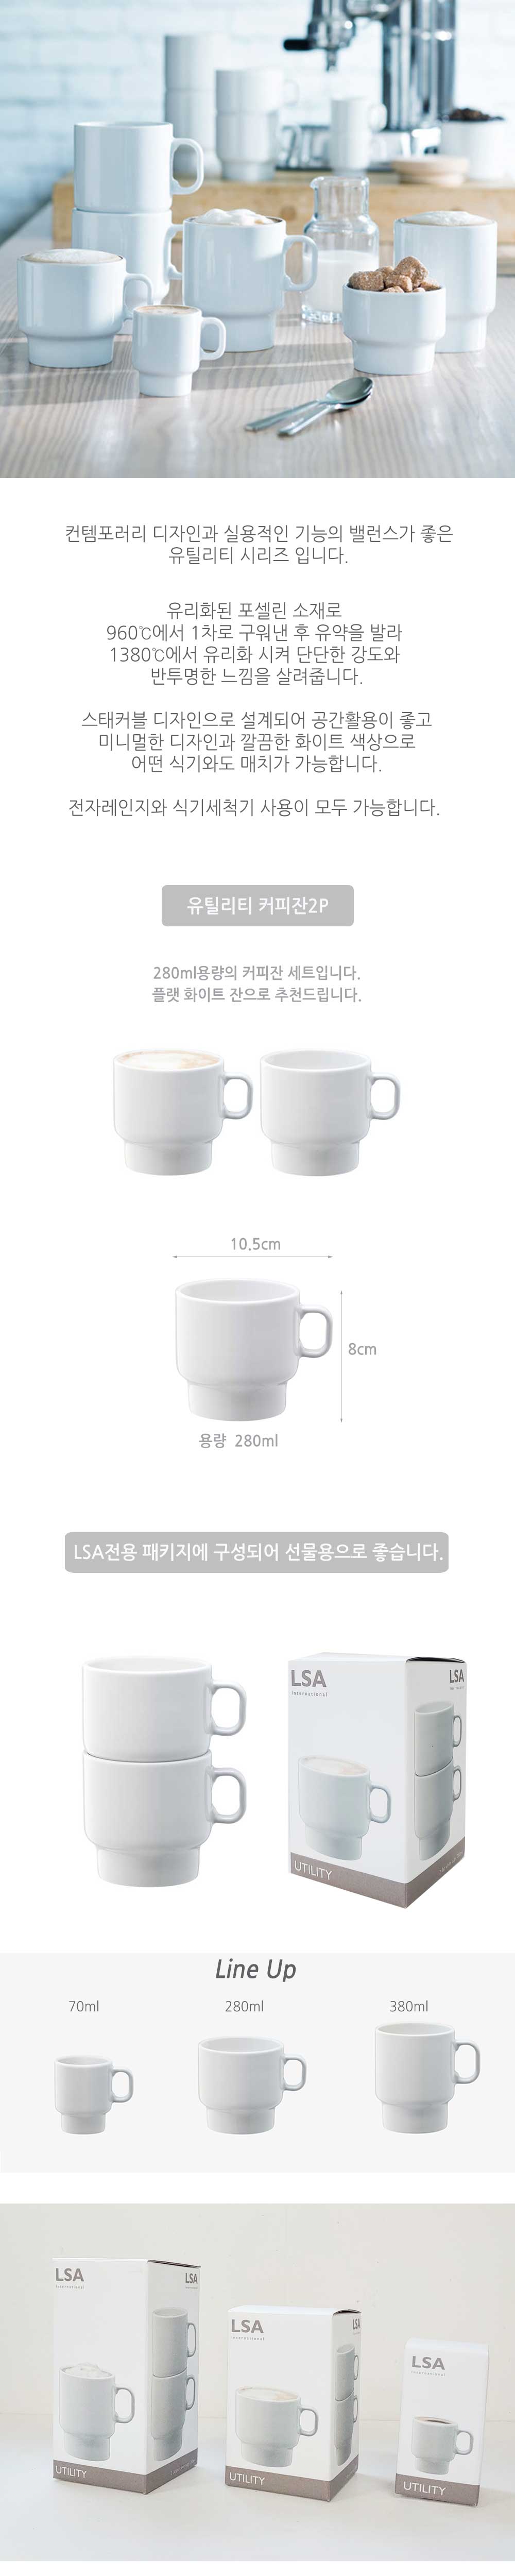 coffee_detail.jpg